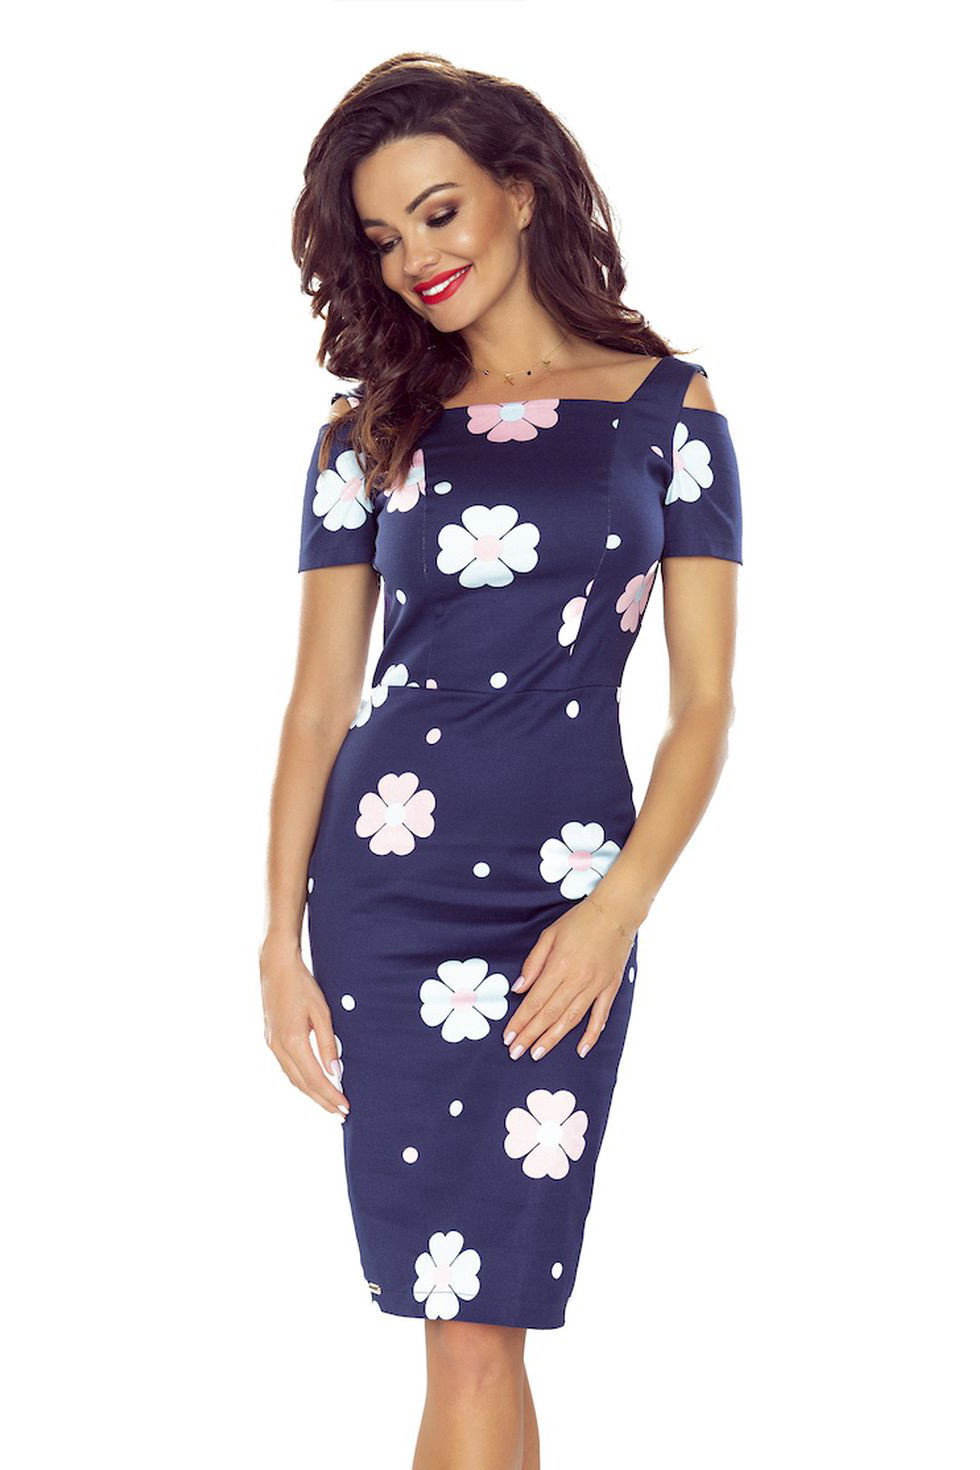 Elegantní tmavě modré květované dámské šaty s krátkými rukávy 440-3 S